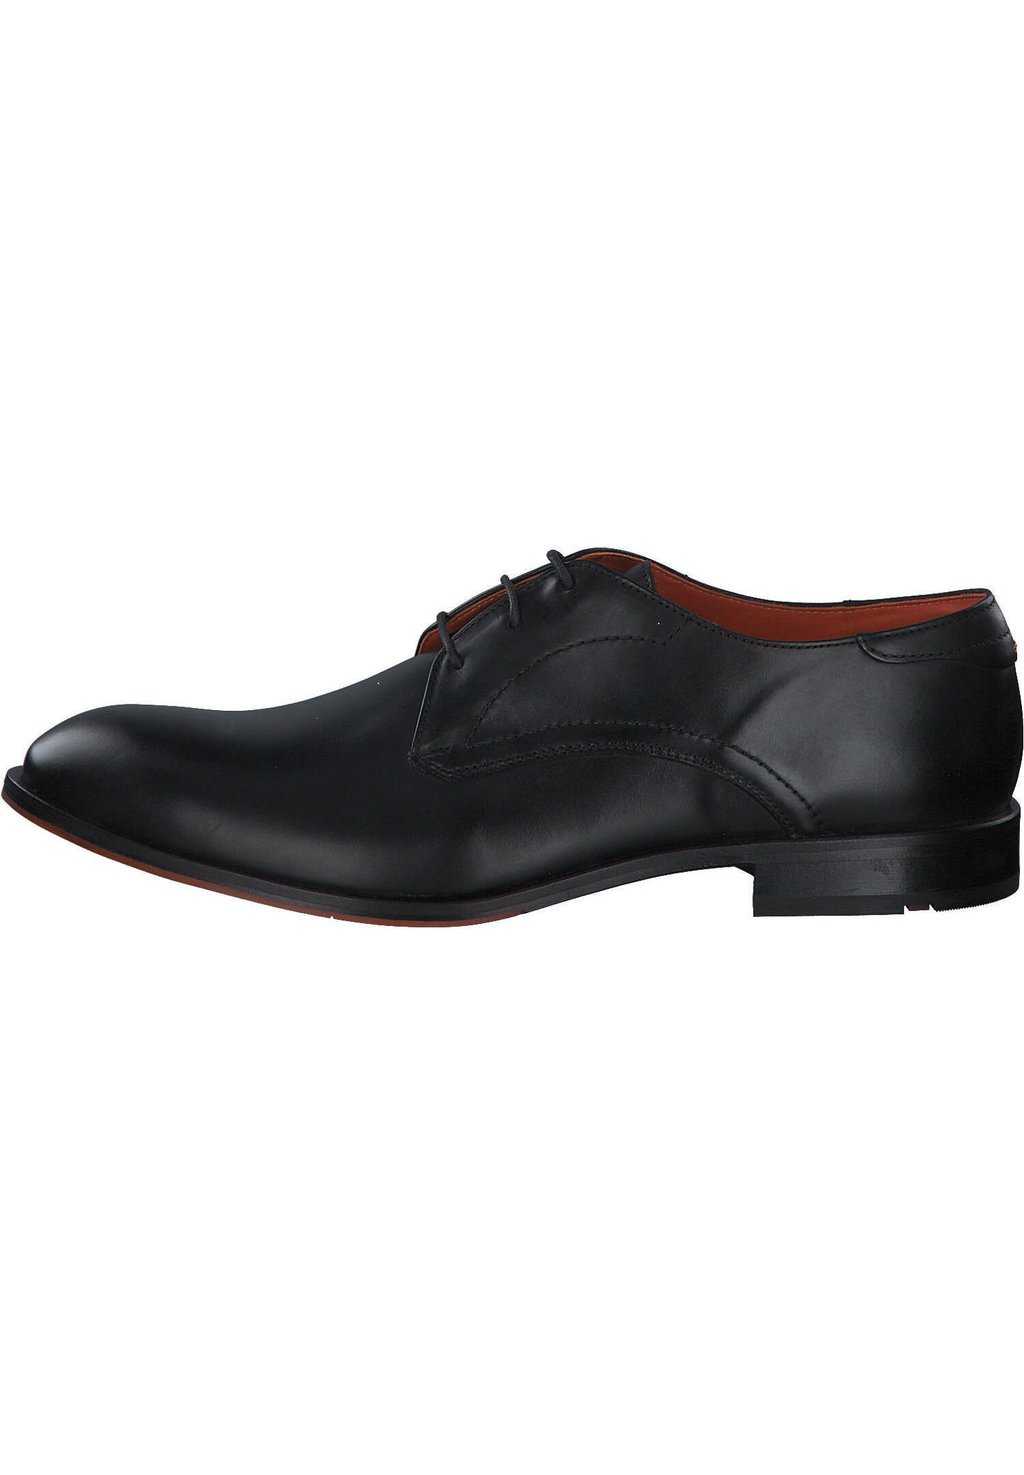 Деловые туфли на шнуровке PARBAT Lloyd, цвет schwarz деловые туфли на шнуровке mare lloyd цвет braun